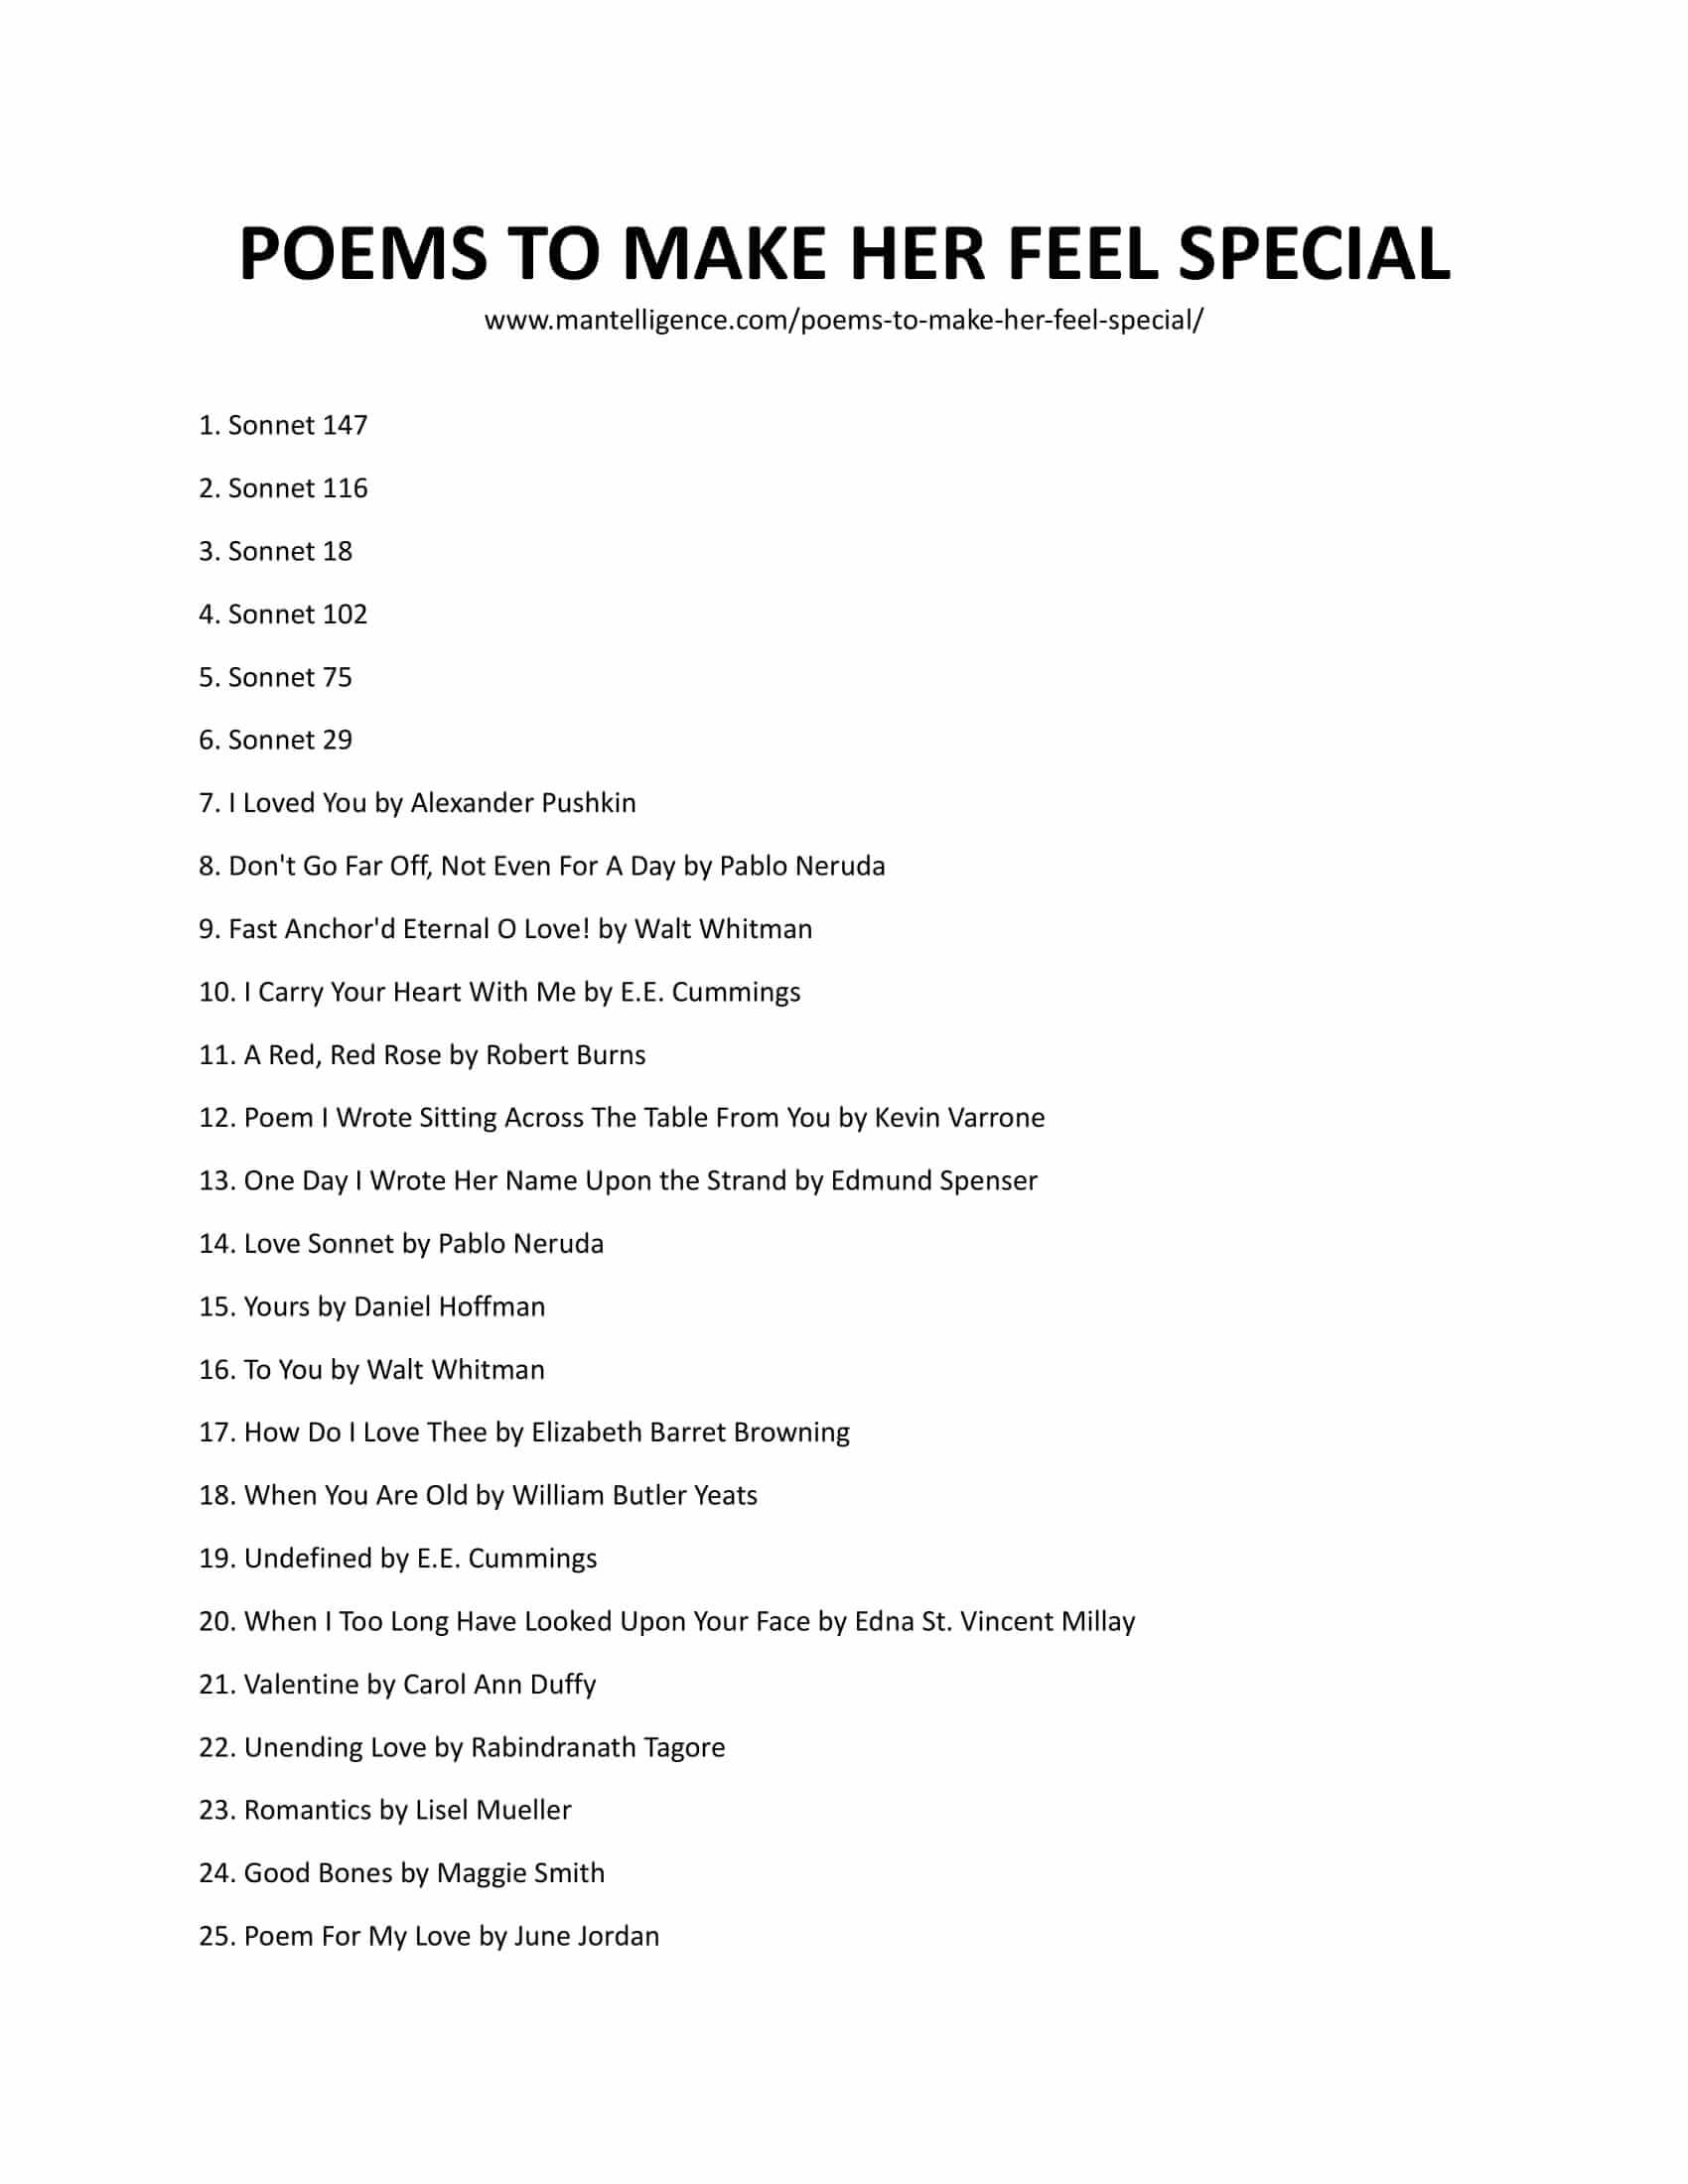 16 poemas cortos que la hacen sentir especial